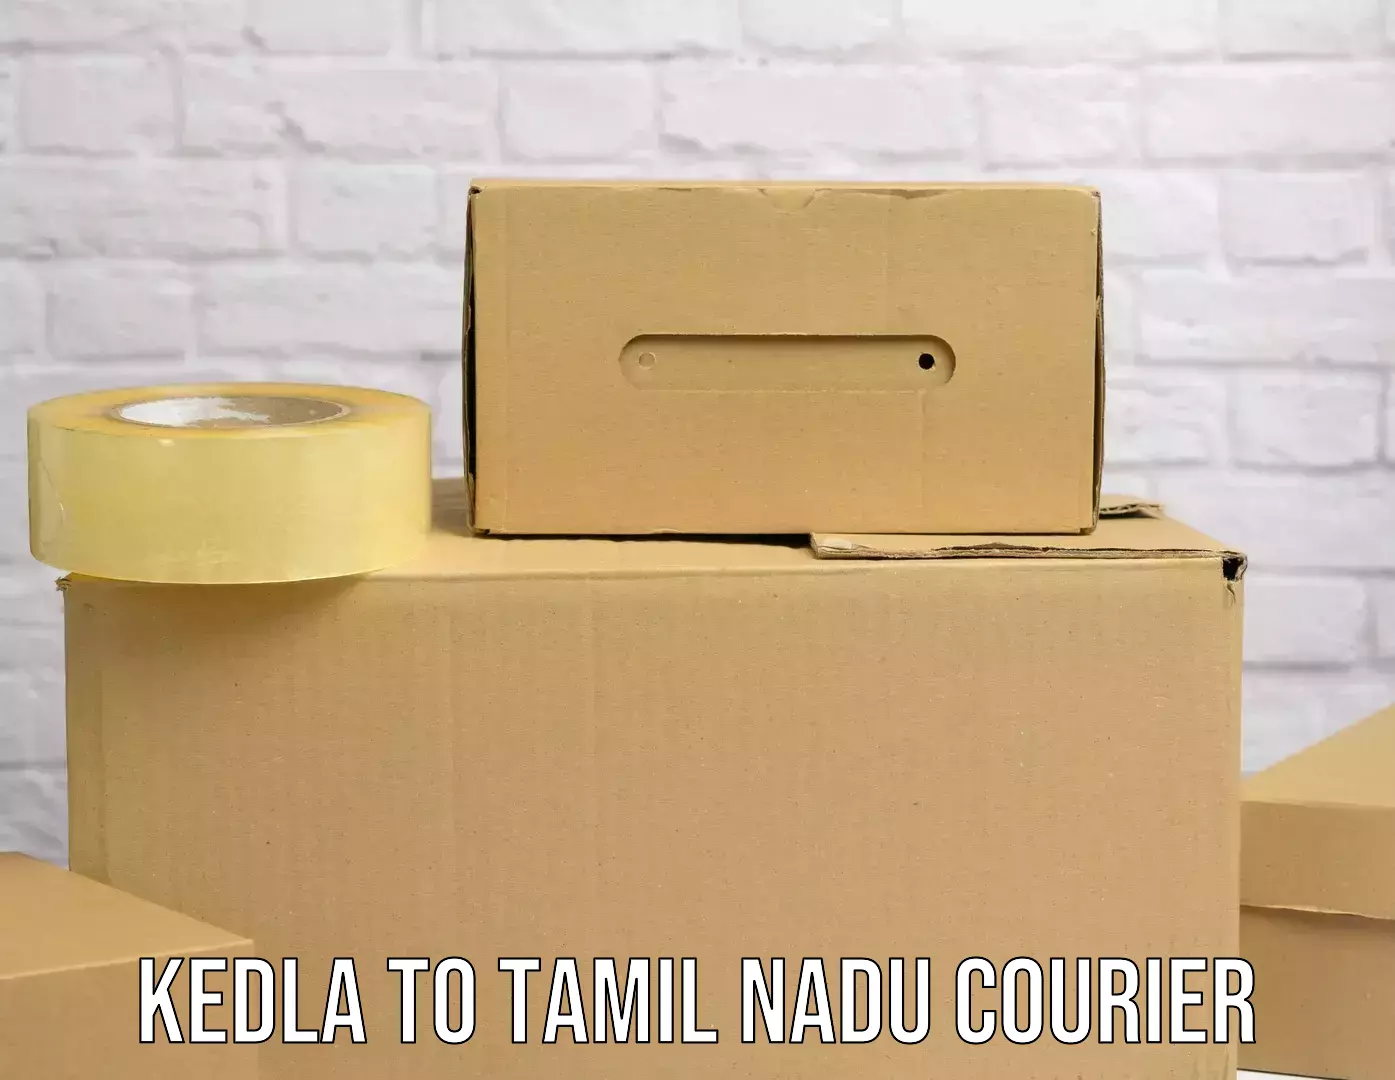 State-of-the-art courier technology Kedla to Villupuram